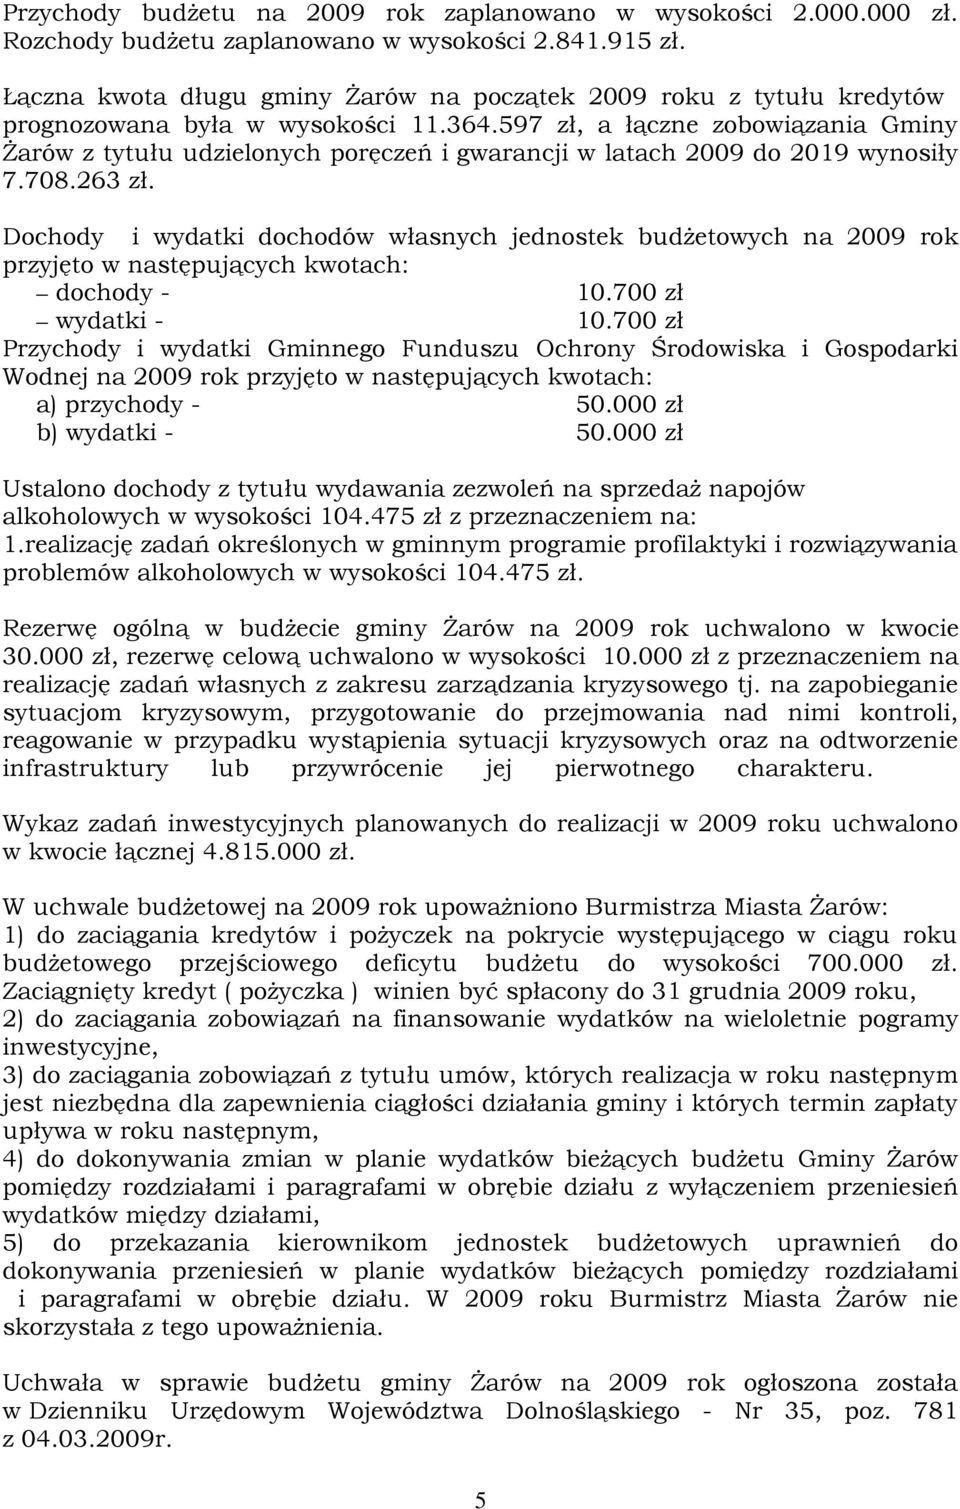 597 zł, a łączne zobowiązania Gminy śarów z tytułu udzielonych poręczeń i gwarancji w latach 2009 do 2019 wynosiły 7.708.263 zł.